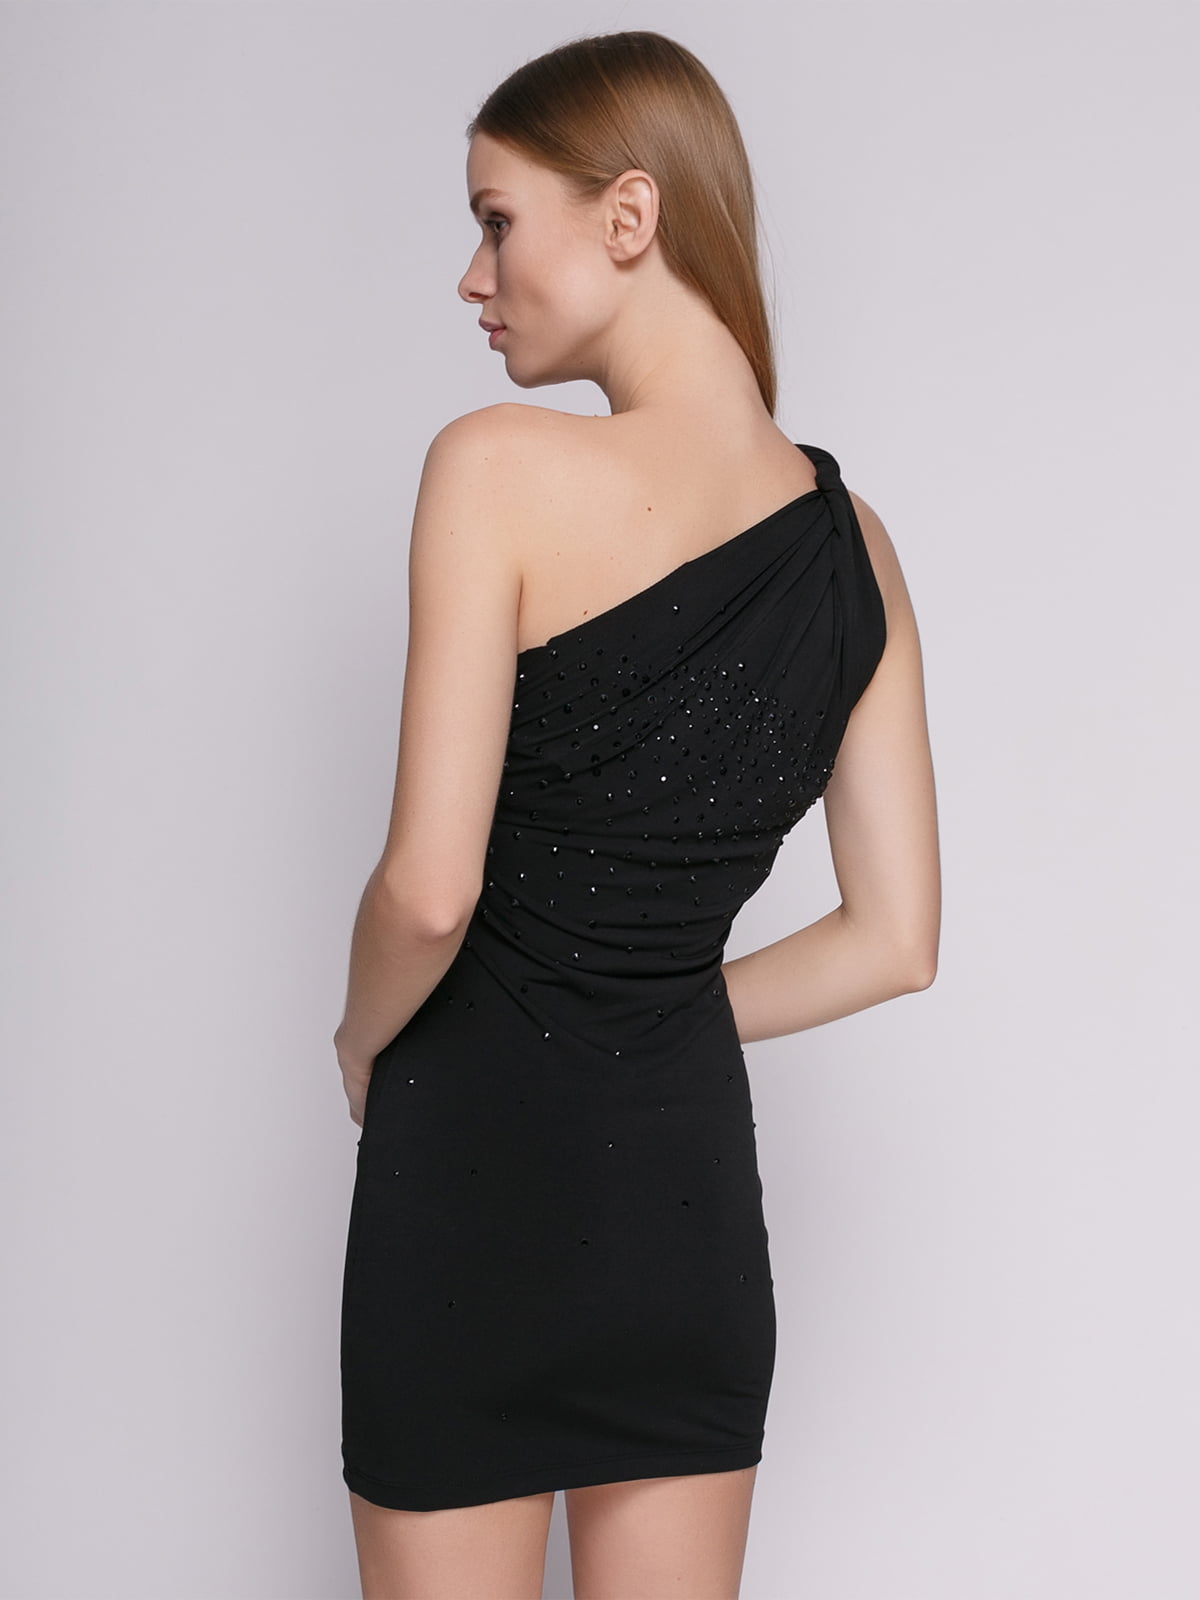 Платье черное на одно плечо декорированное | 377917